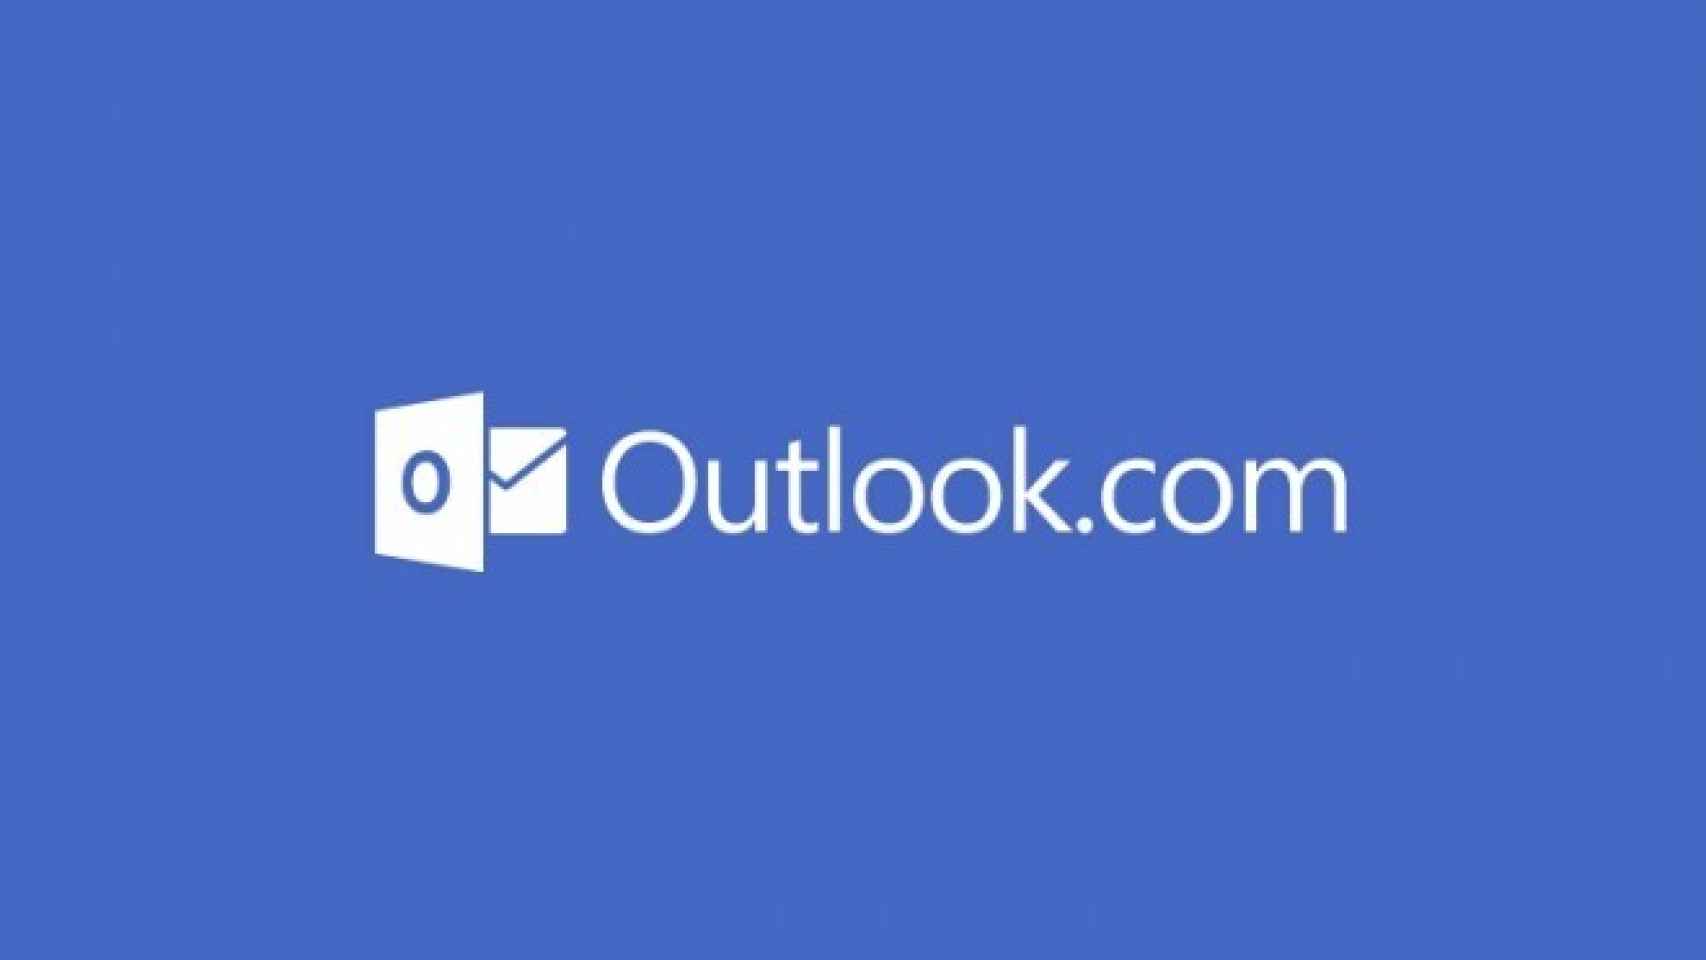 La app oficial de Outlook se actualiza con búsqueda mejorada y correos automáticos